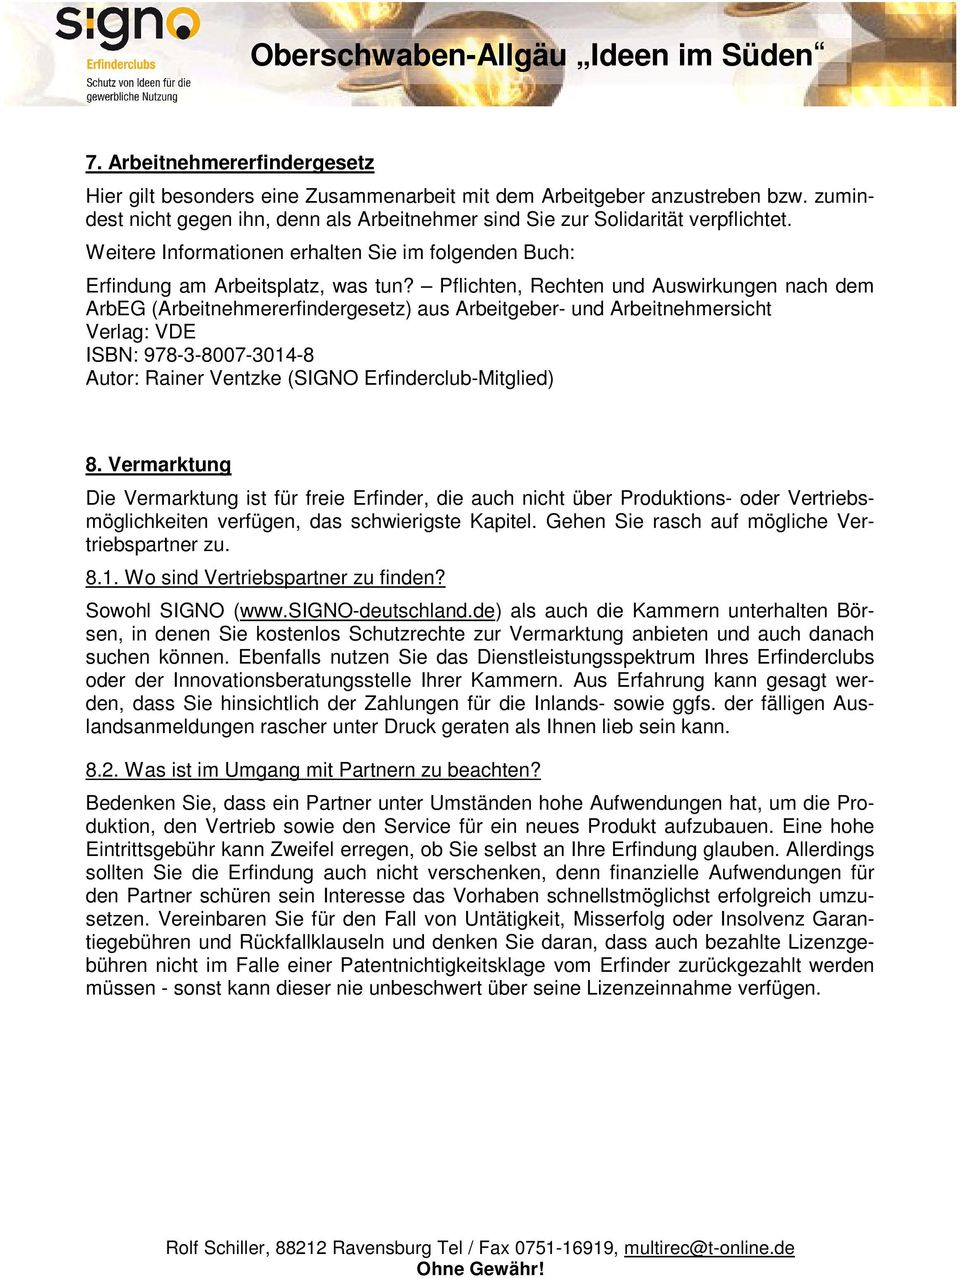 Pflichten, Rechten und Auswirkungen nach dem ArbEG (Arbeitnehmererfindergesetz) aus Arbeitgeber- und Arbeitnehmersicht Verlag: VDE ISBN: 978-3-8007-3014-8 Autor: Rainer Ventzke (SIGNO